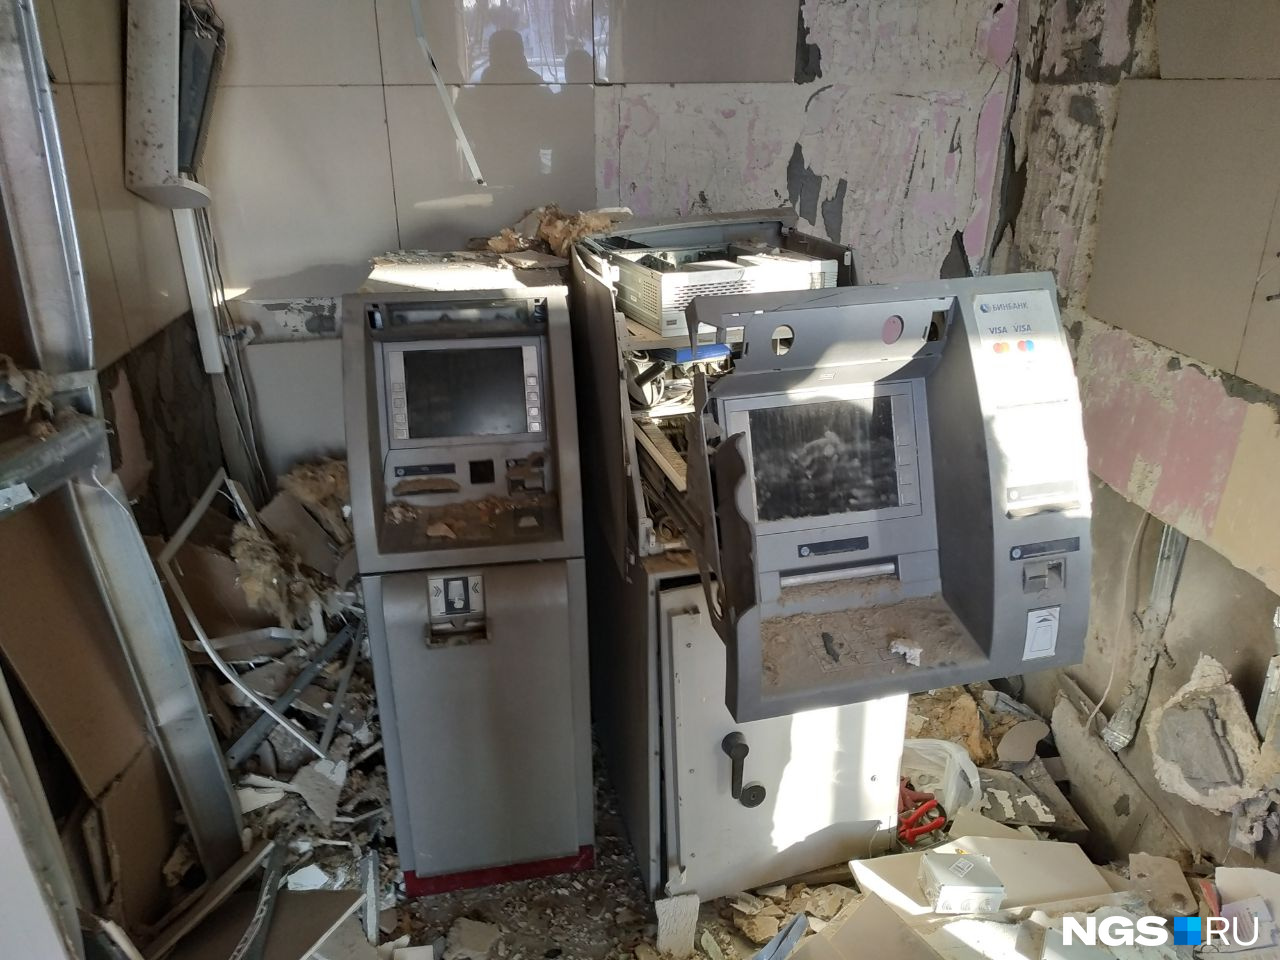 Взрывом повредило не только банкоматы, но и помещение, где они находятся